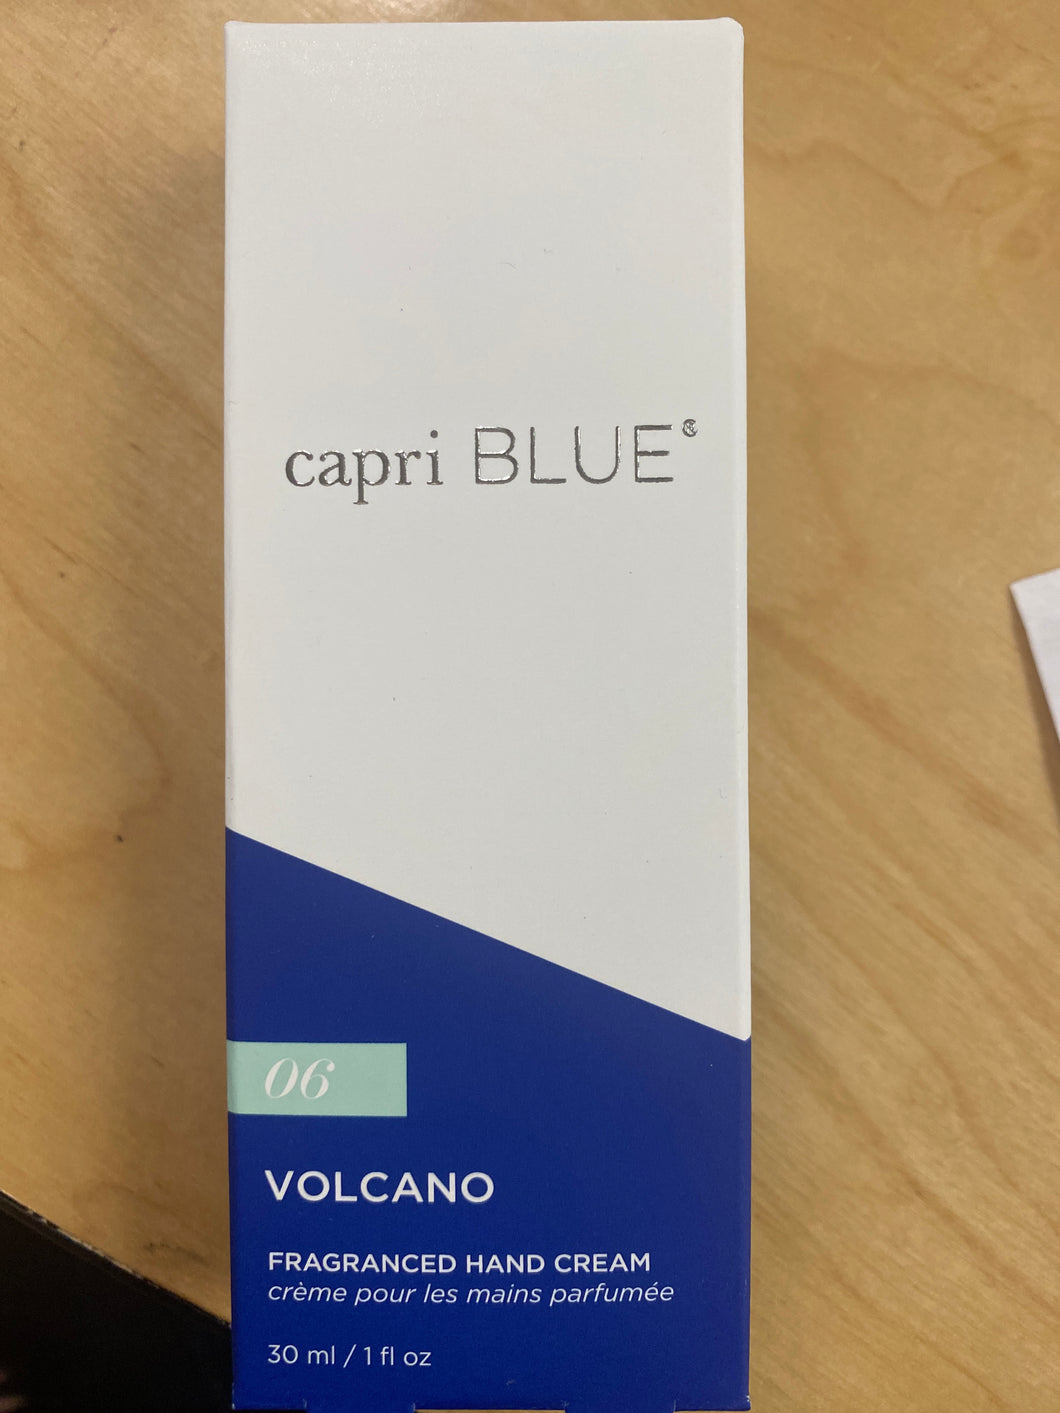 Capri blue hand cream